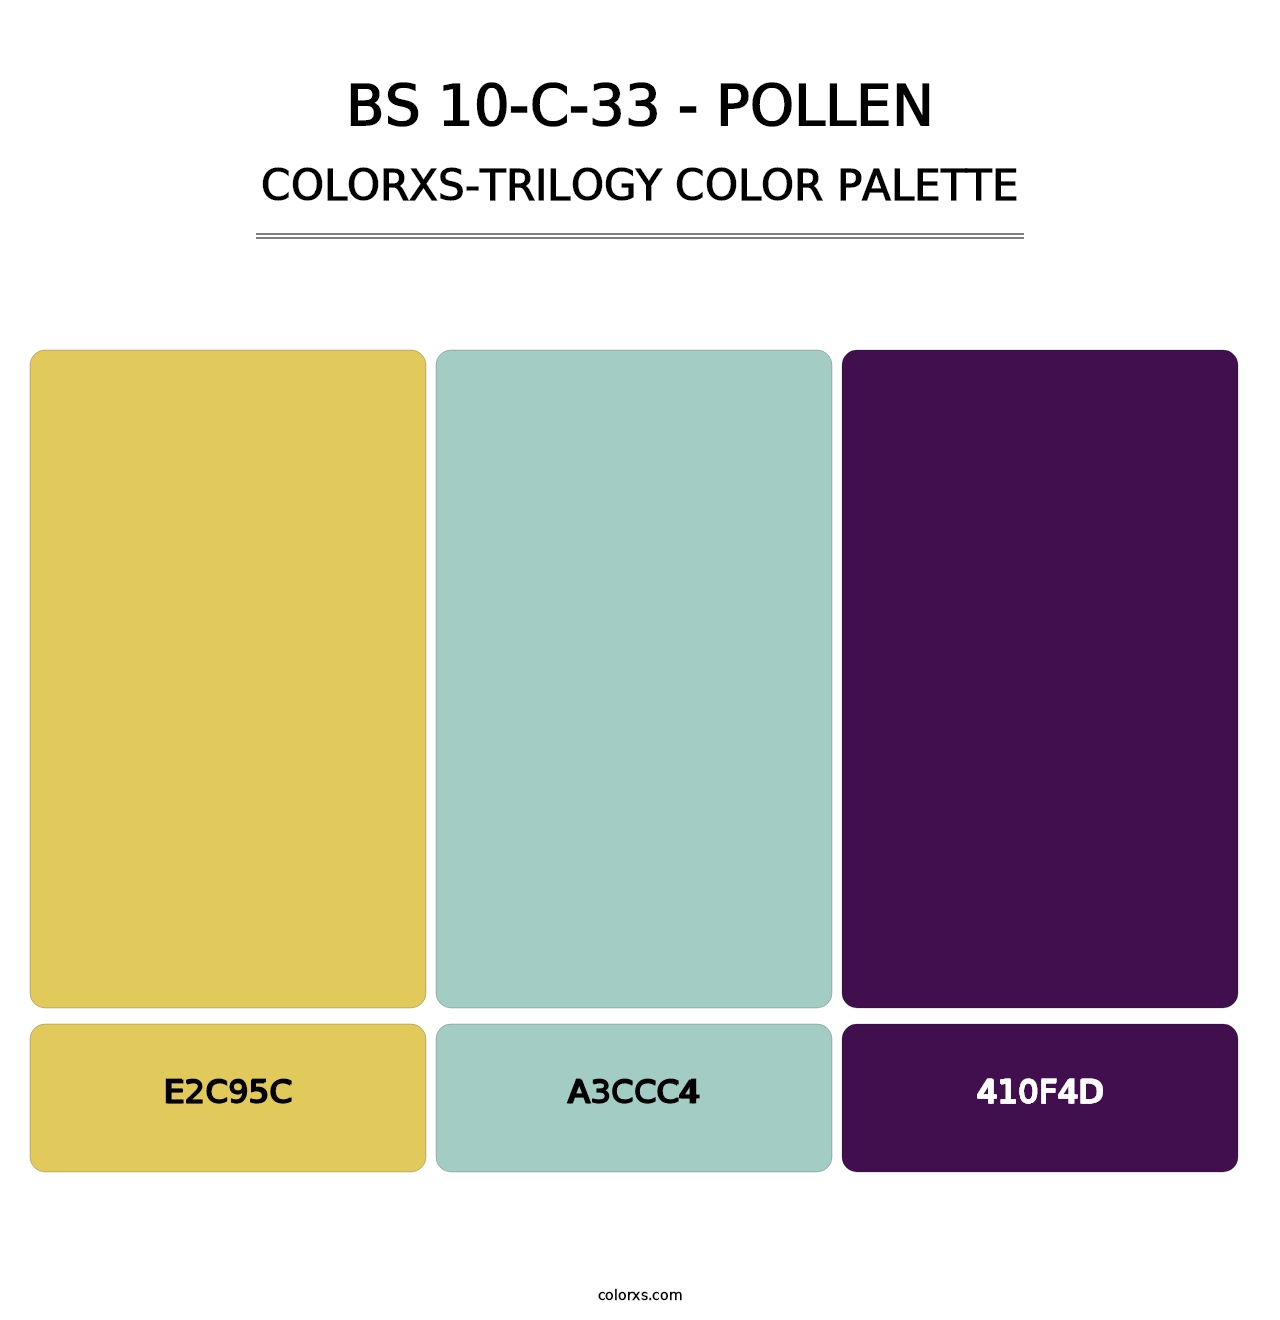 BS 10-C-33 - Pollen - Colorxs Trilogy Palette